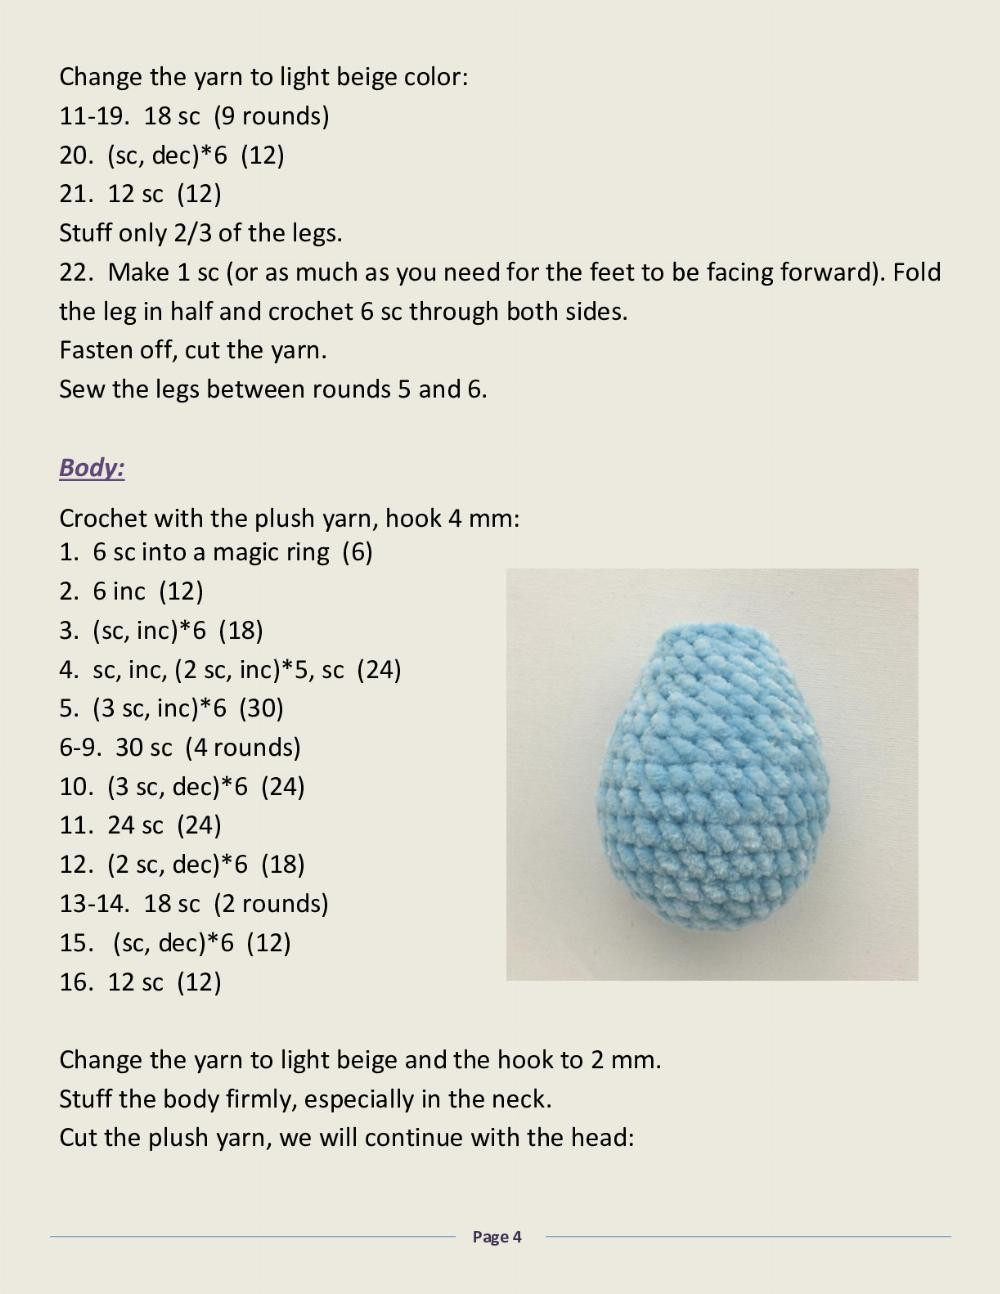 MEEMI THE SWEETEST SHEEP Crochet toy pattern